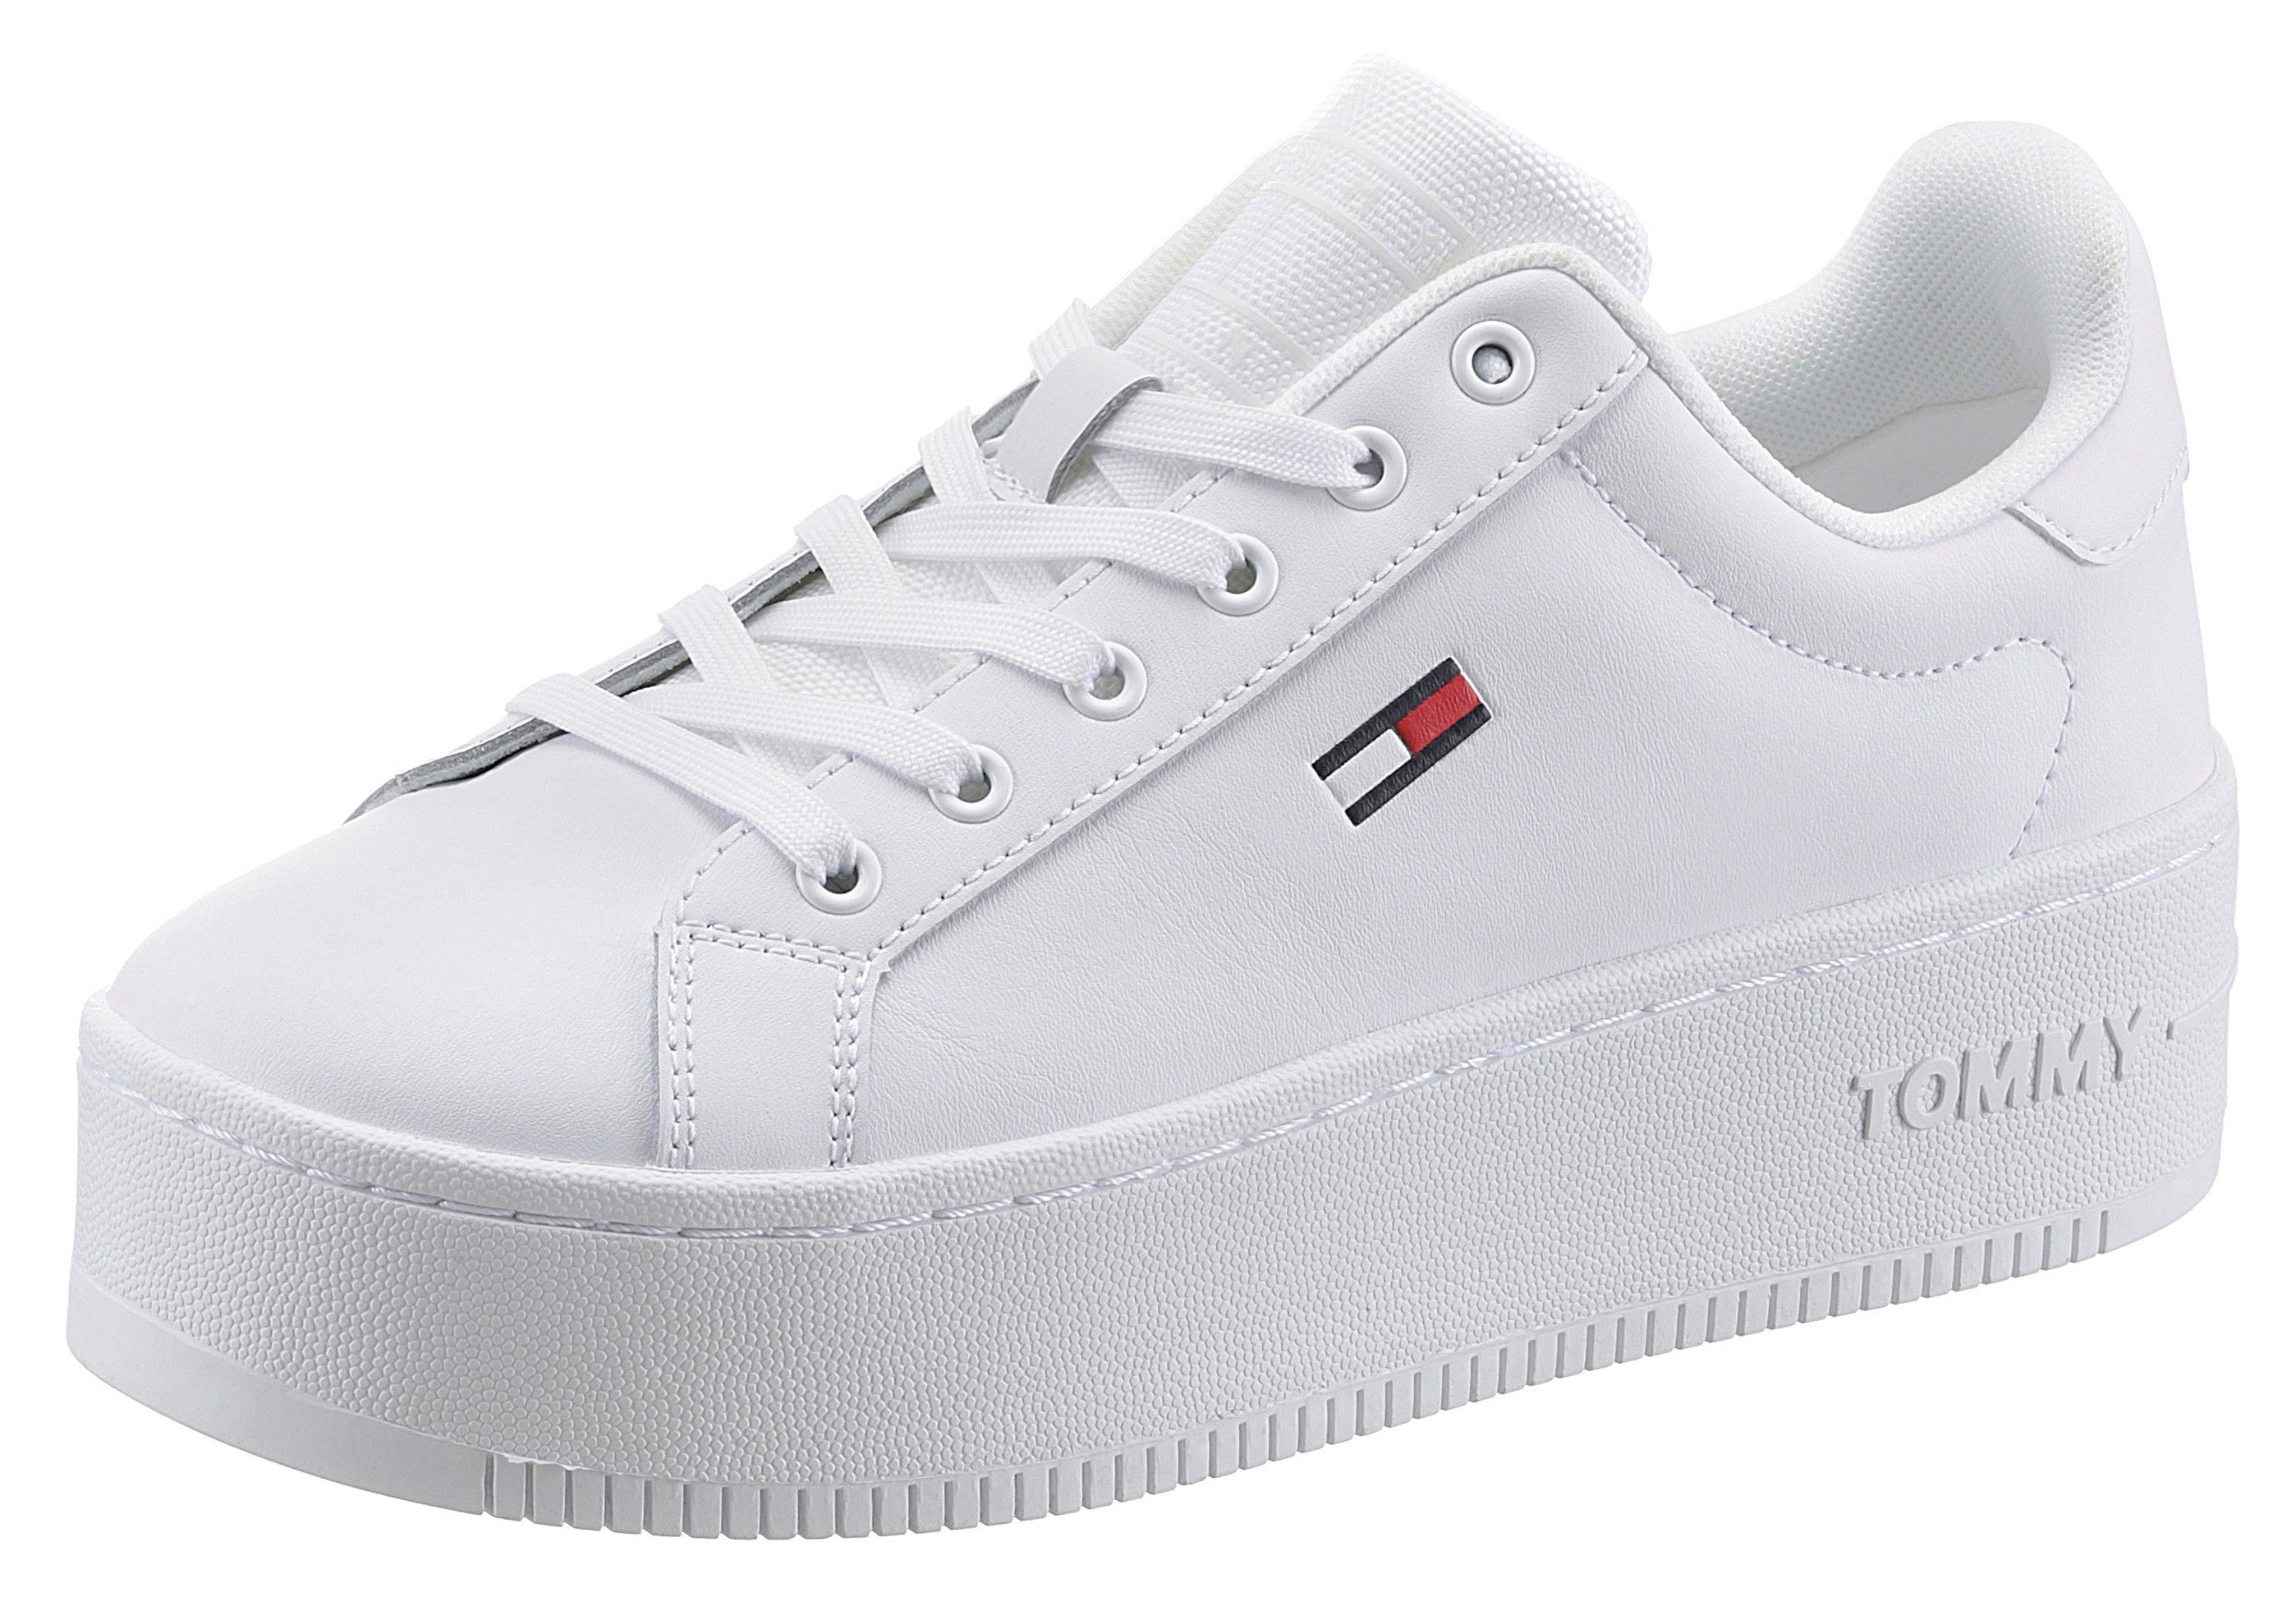 Weiße Tommy Hilfiger Schuhe online kaufen | OTTO